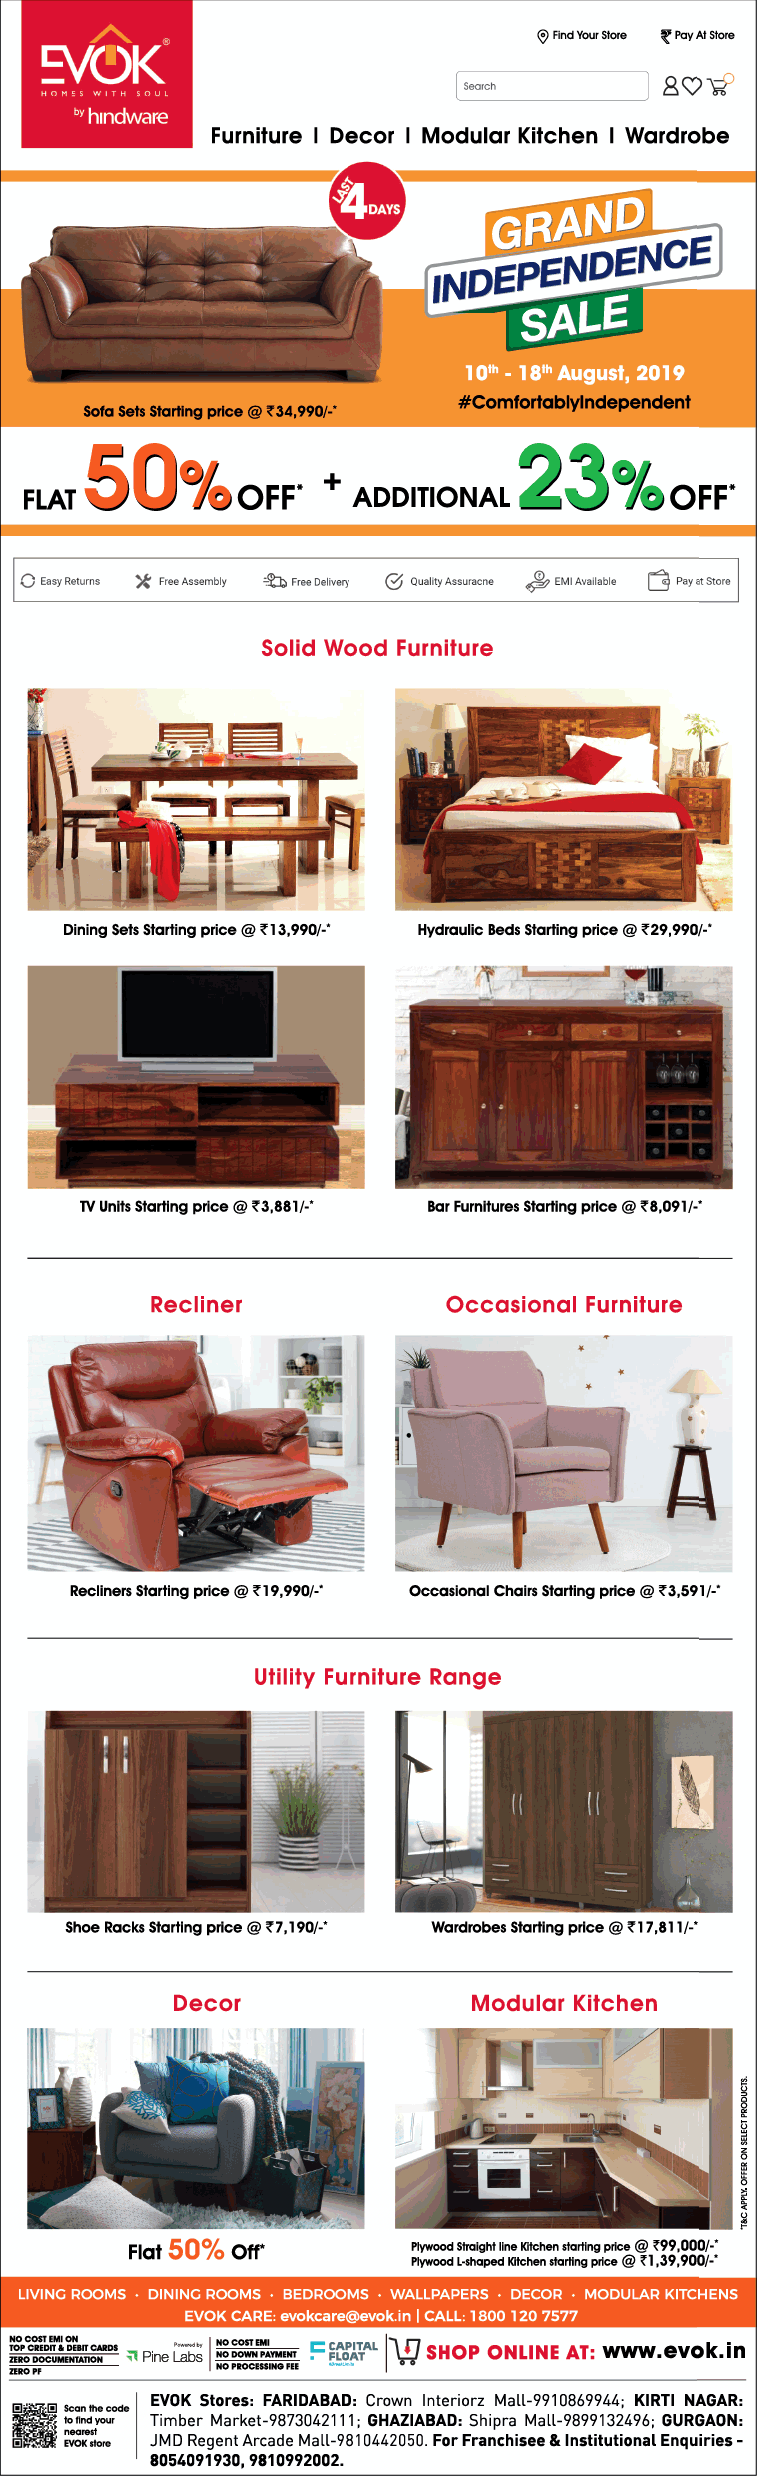 evok-furniture-grand-independence-sale-flat-50%-off-ad-delhi-times-15-08-2019.png